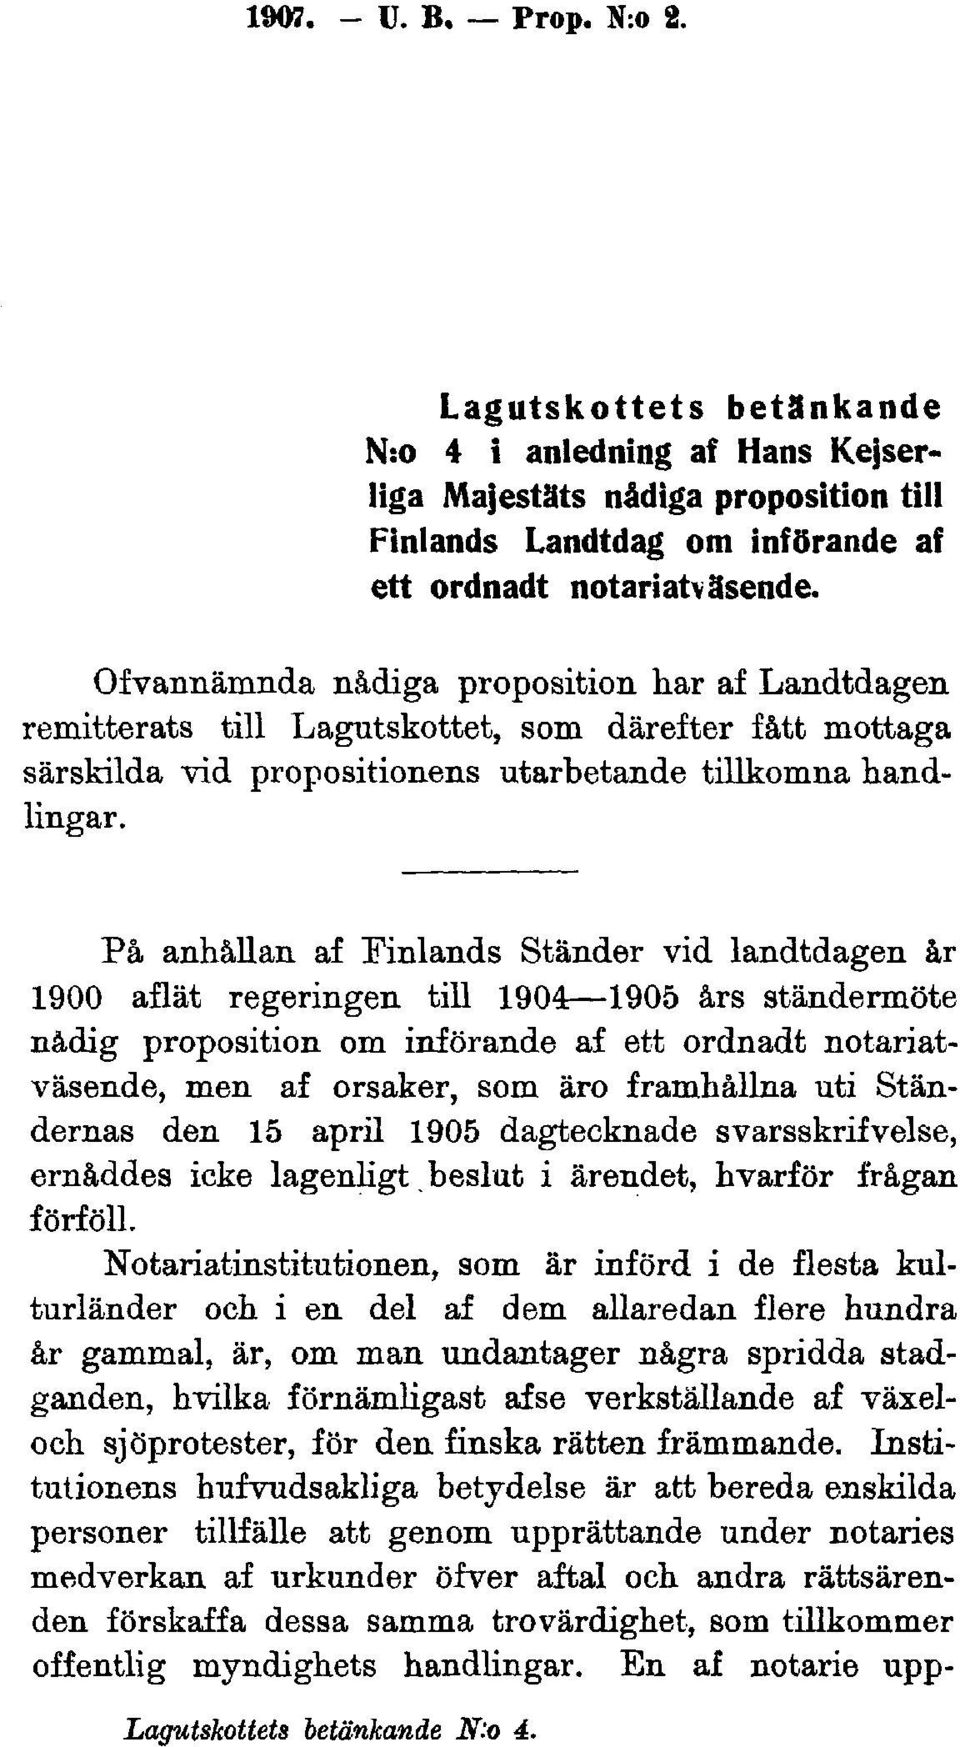 På anhållan af Finlands Ständer vid landtdagen år 1900 aflät regeringen till 1904 1905 års ständermöte nådig proposition om införande af ett ordnadt notariatväsende, men af orsaker, som äro